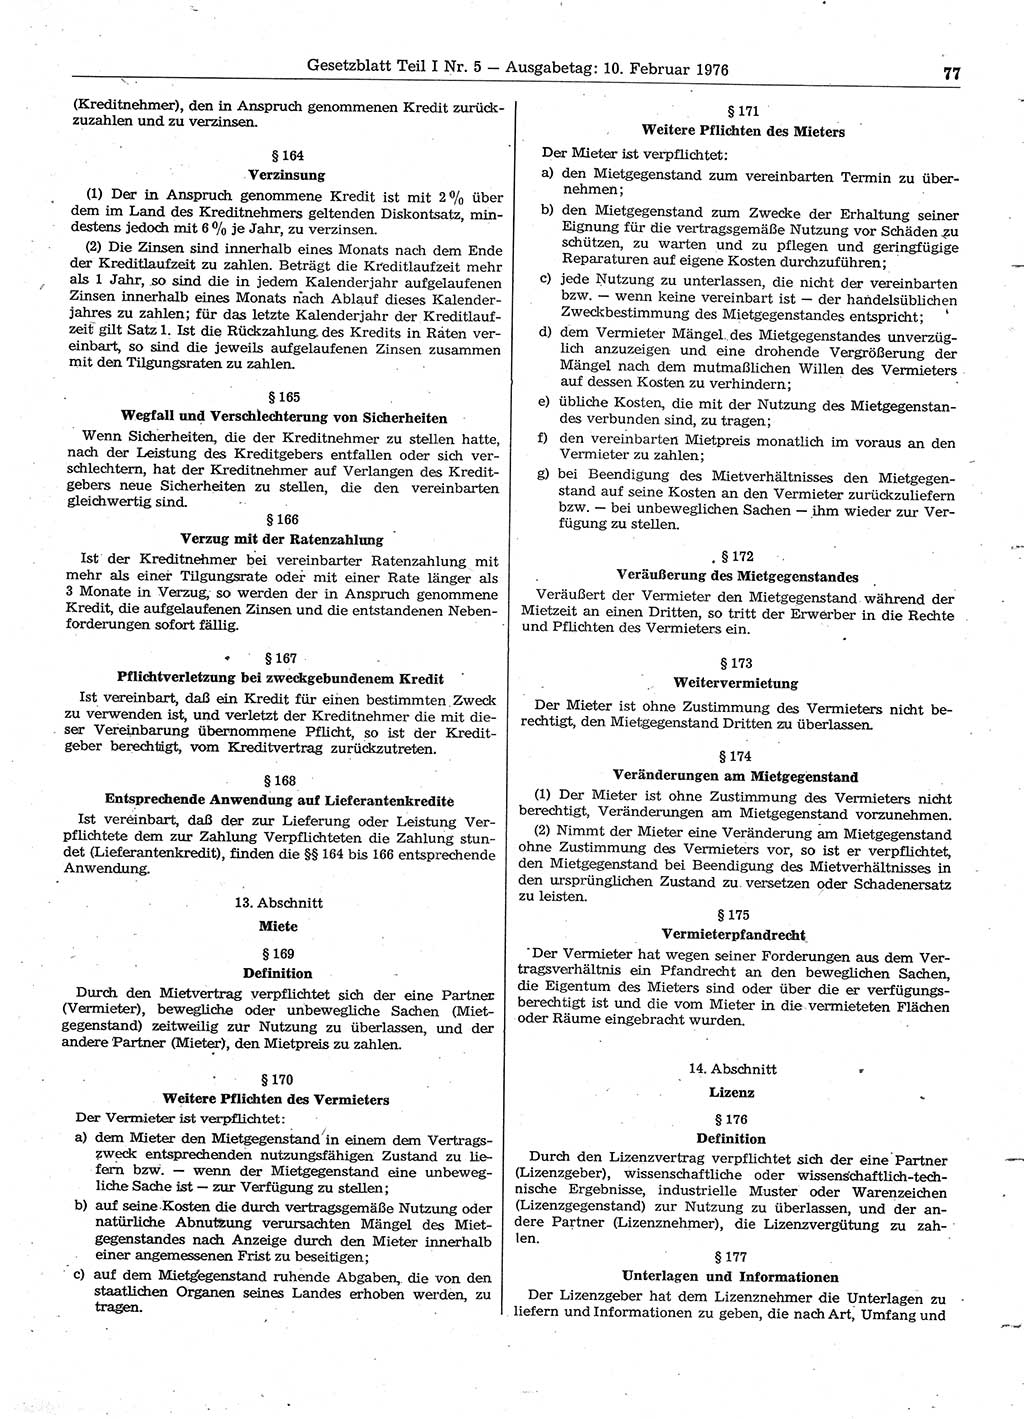 Gesetzblatt (GBl.) der Deutschen Demokratischen Republik (DDR) Teil Ⅰ 1976, Seite 77 (GBl. DDR Ⅰ 1976, S. 77)